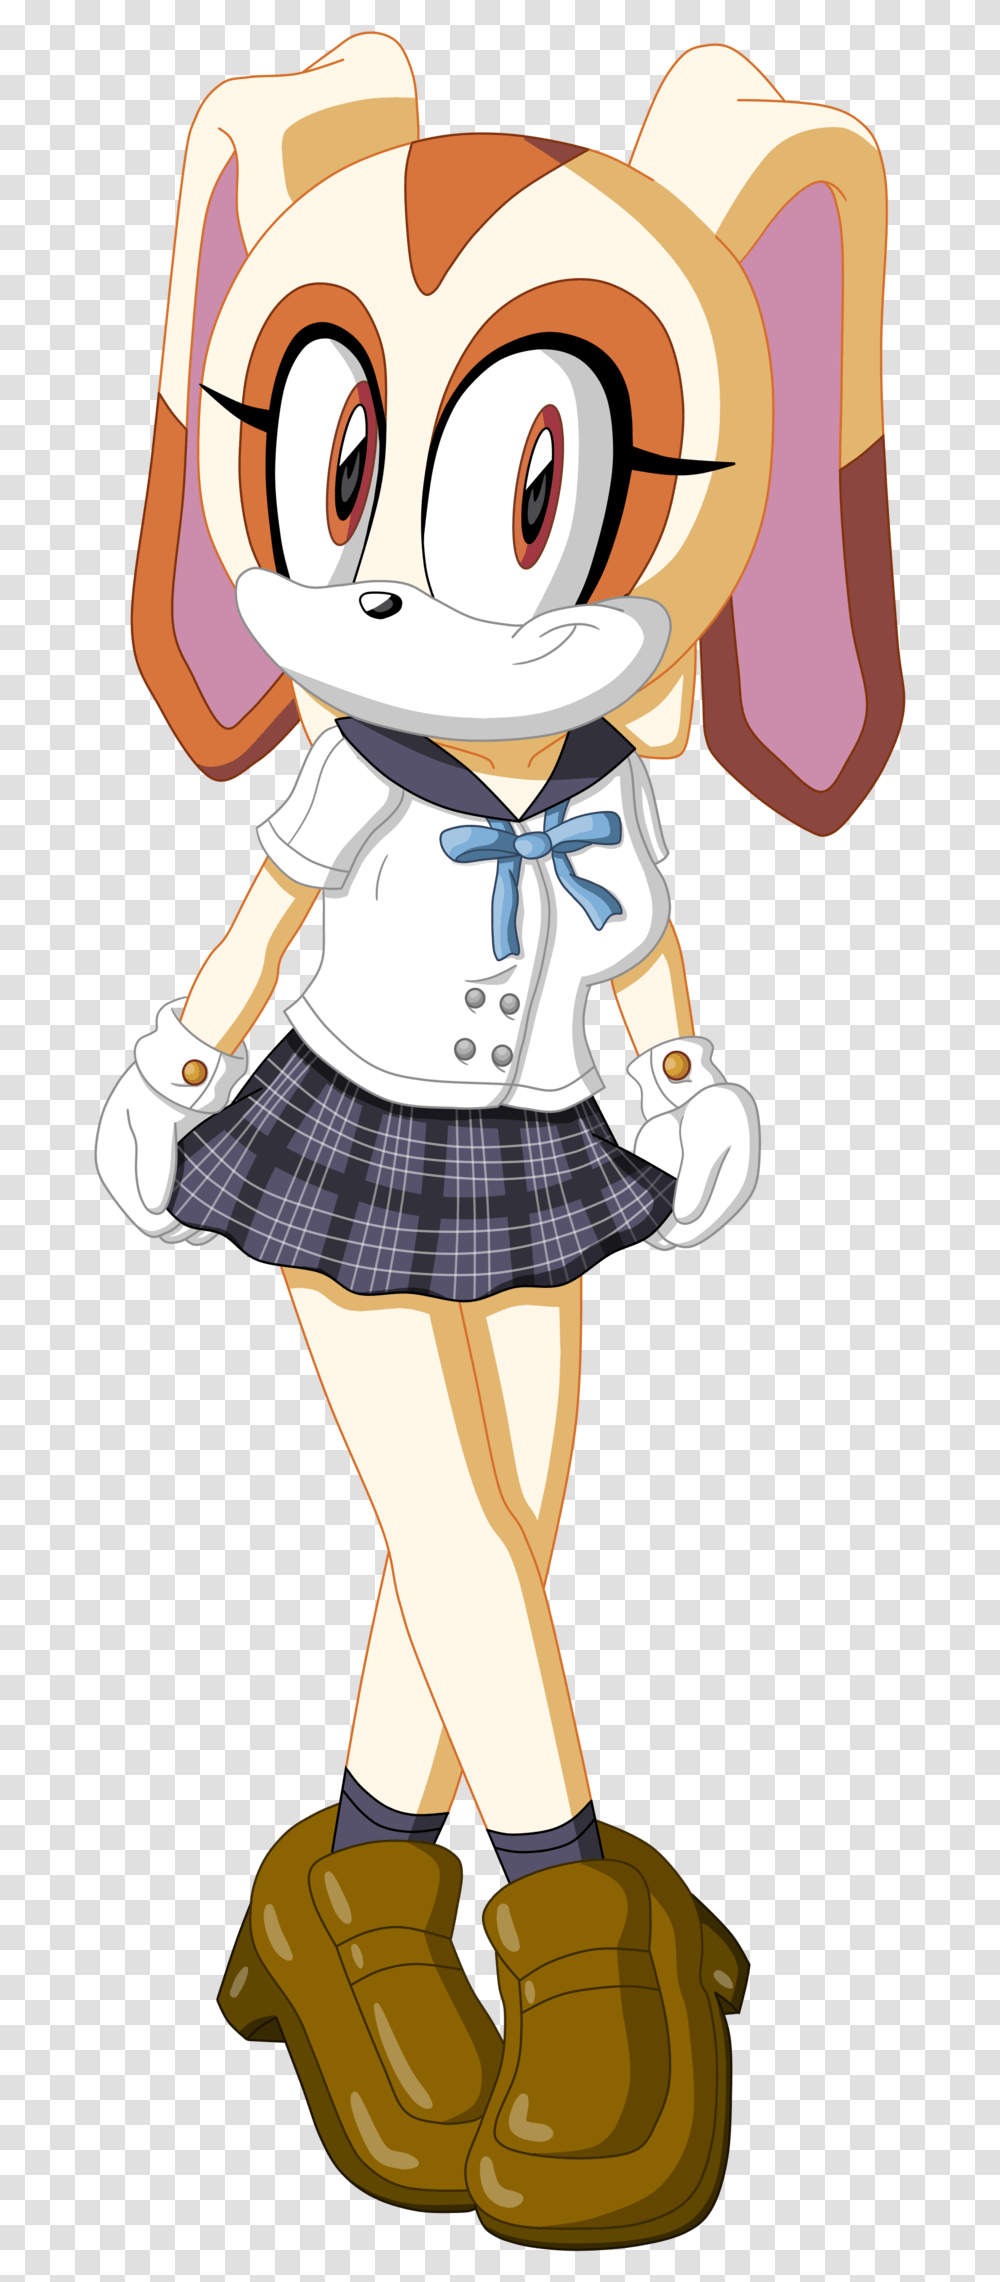 Cream The Rabbit School Uniform, Person, Human, Sailor Suit, Costume Transparent Png